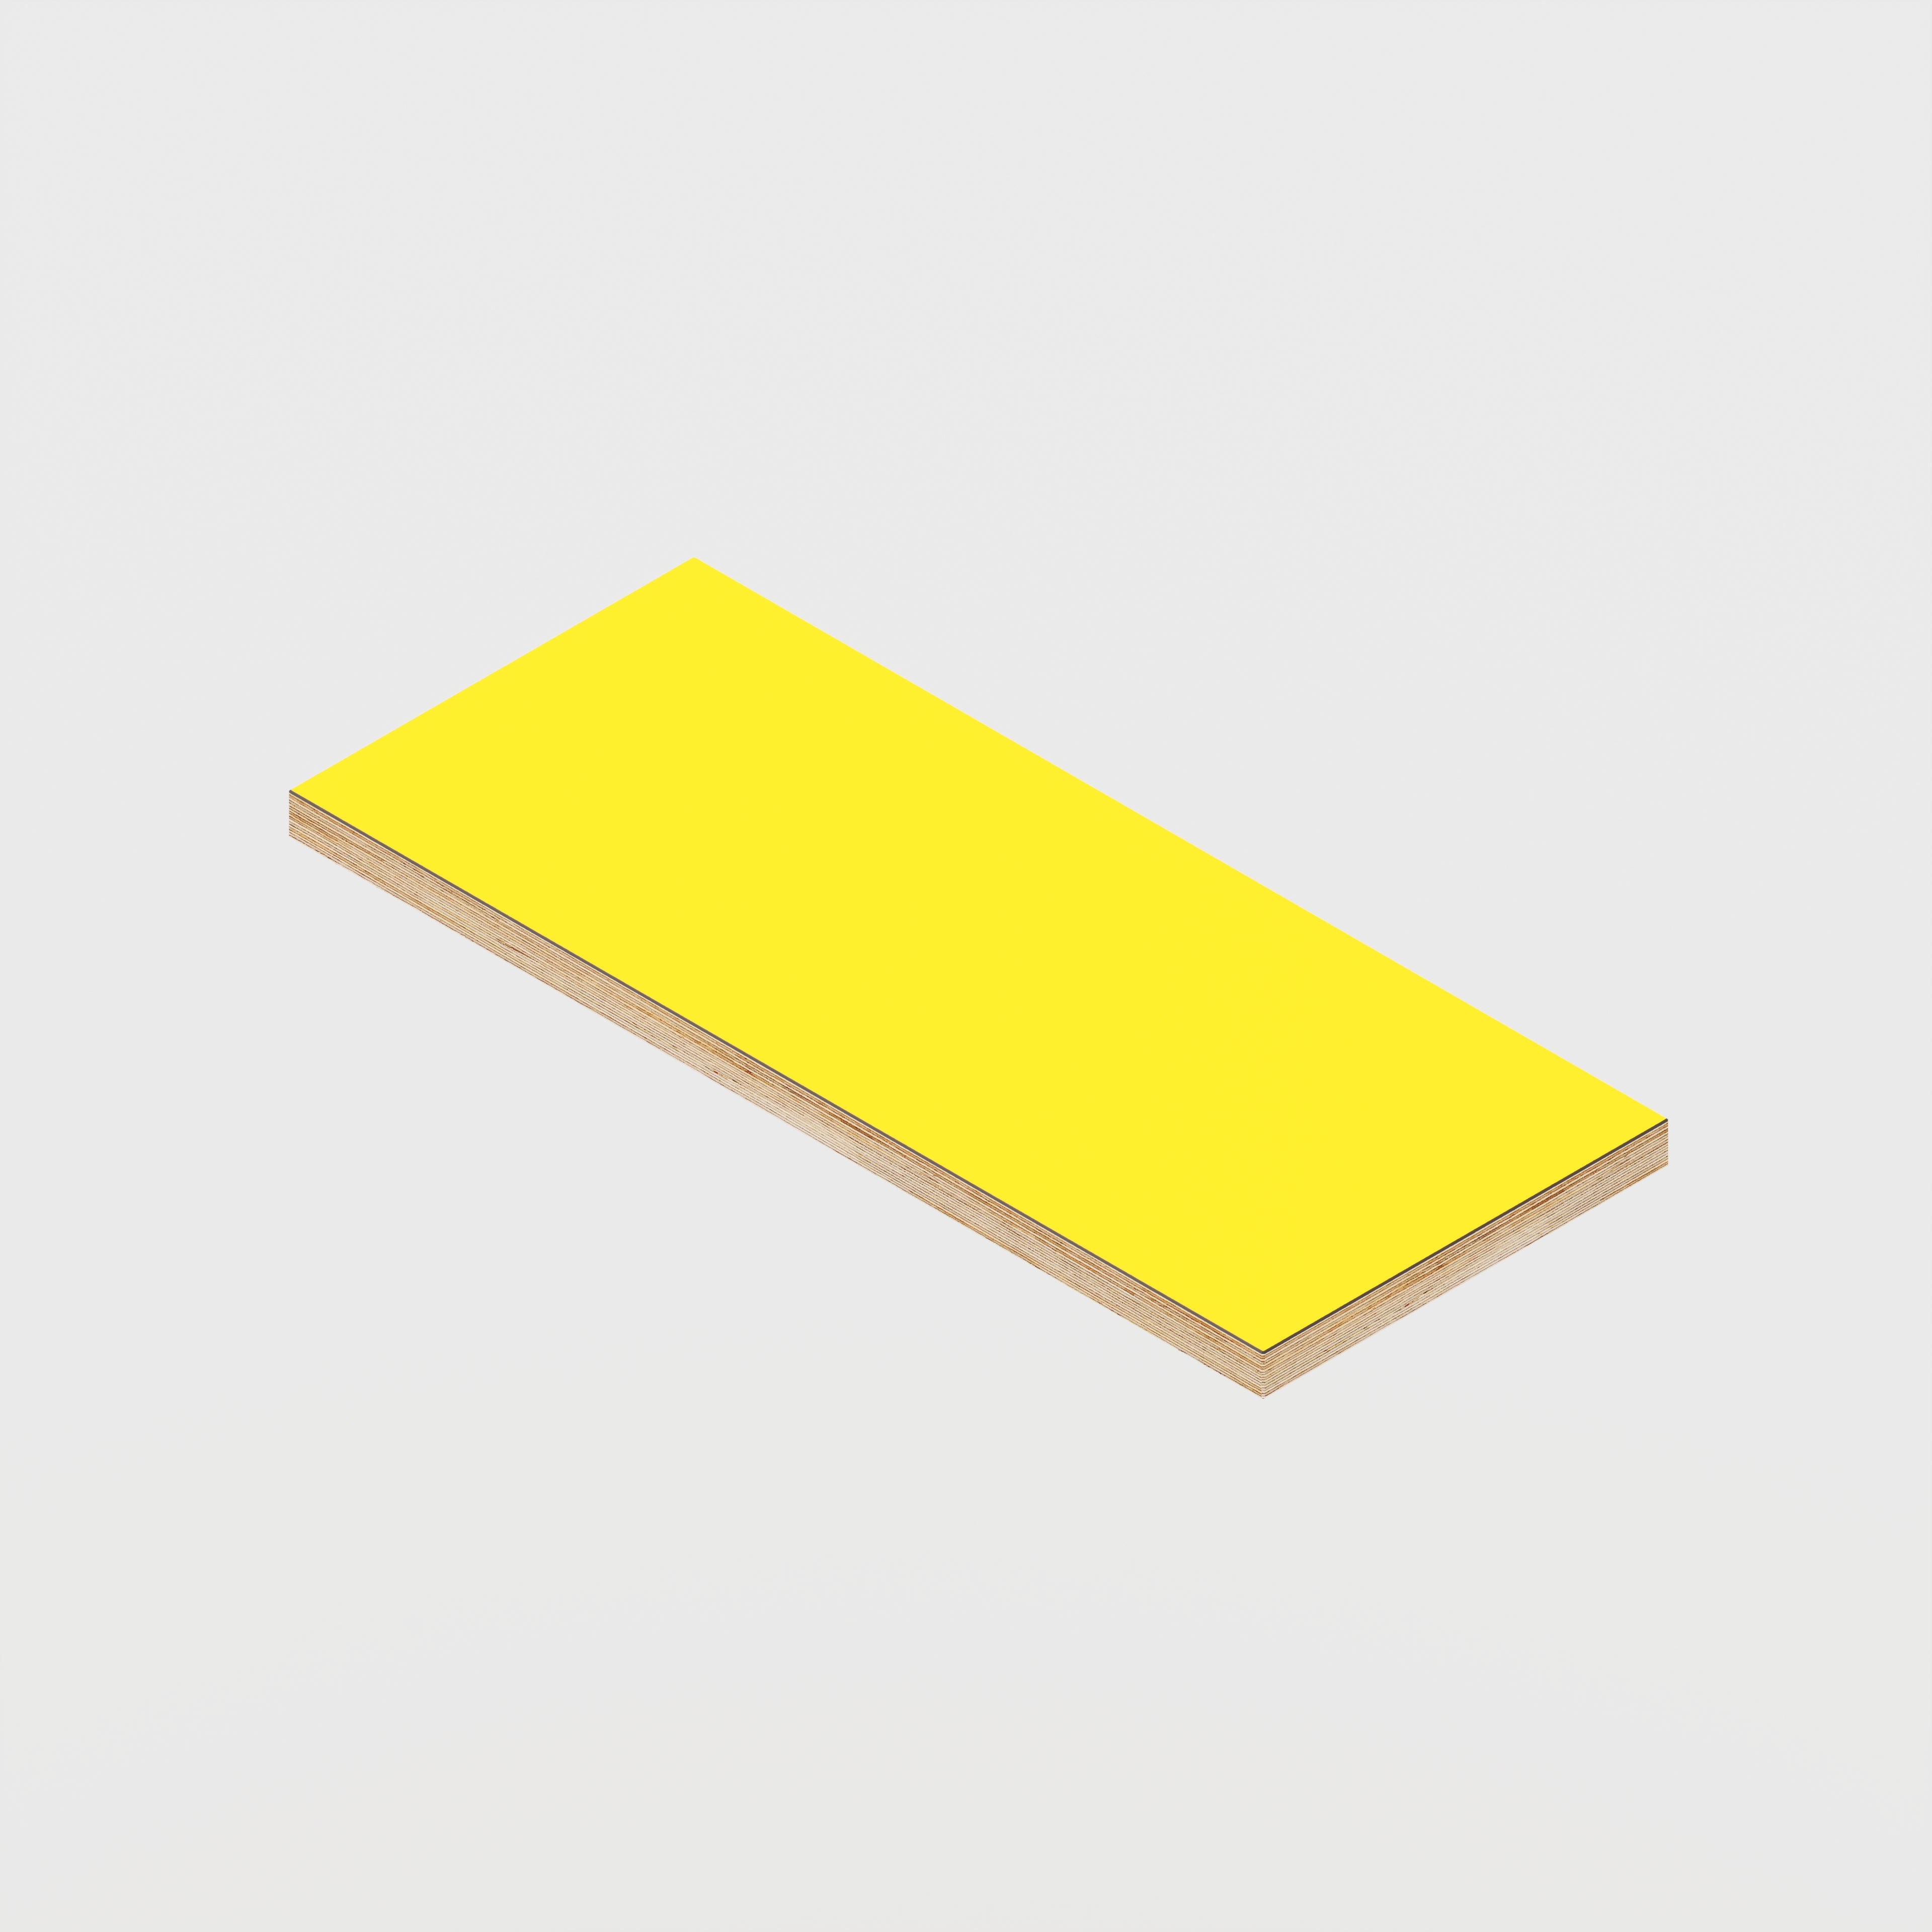 Shelf - Formica Chrome Yellow - 600(w) x 250(d)